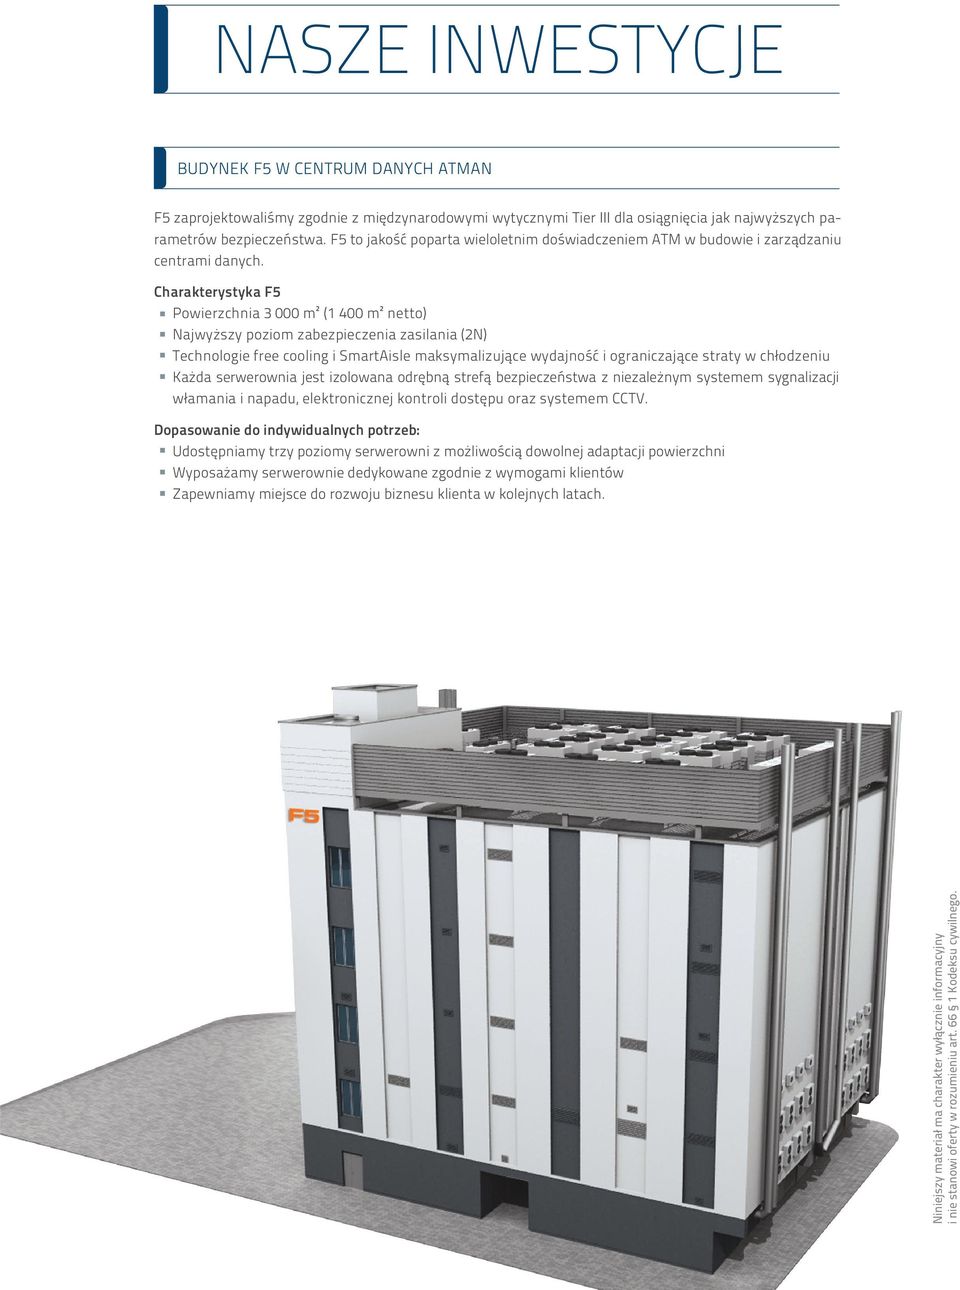 Charakterystyka F5 Powierzchnia 3 000 m² (1 400 m² netto) Najwyższy poziom zabezpieczenia zasilania (2N) Technologie free cooling i SmartAisle maksymalizujące wydajność i ograniczające straty w